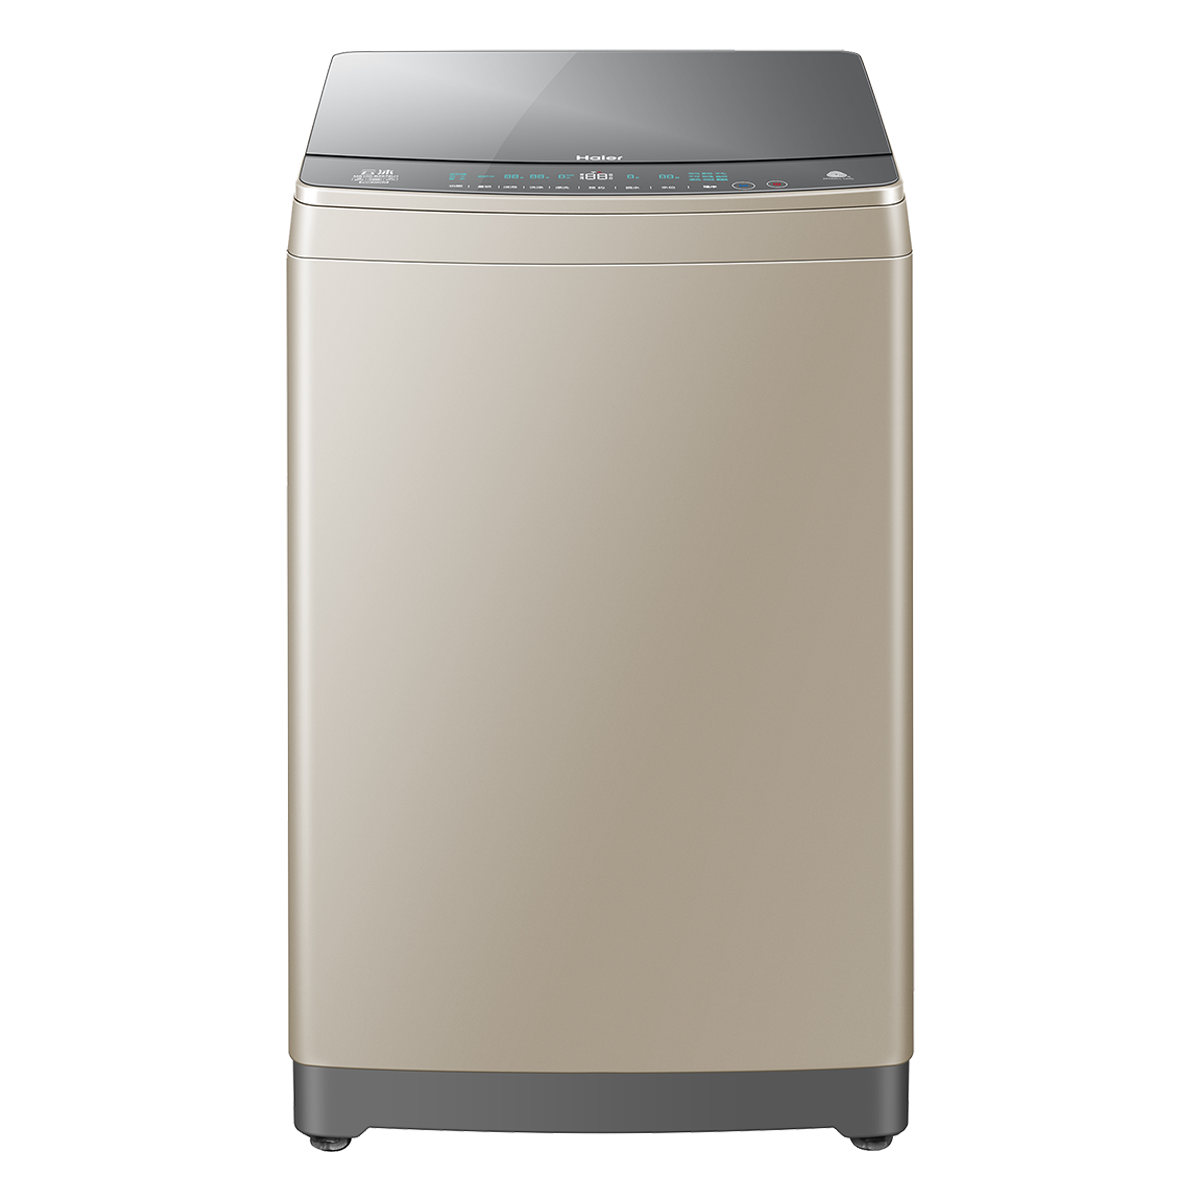 海尔Haier洗衣机 MS100-BZ878U1 说明书